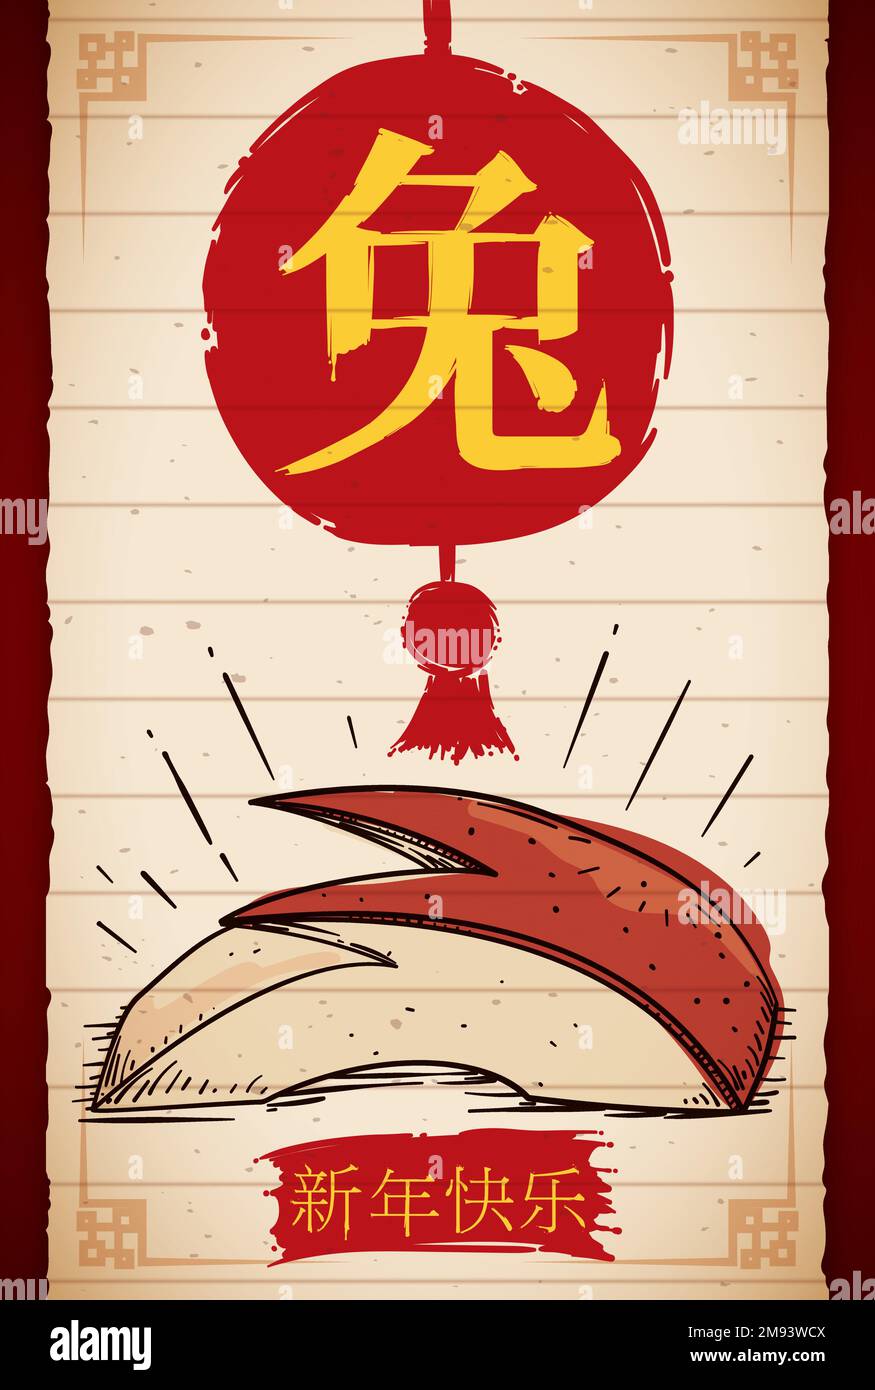 Défilement vertical avec dessin de tranches de lapin de pomme, lanterne en coups de pinceau et salutation pour un joyeux nouvel an chinois du lapin (écrit en chinois). Illustration de Vecteur